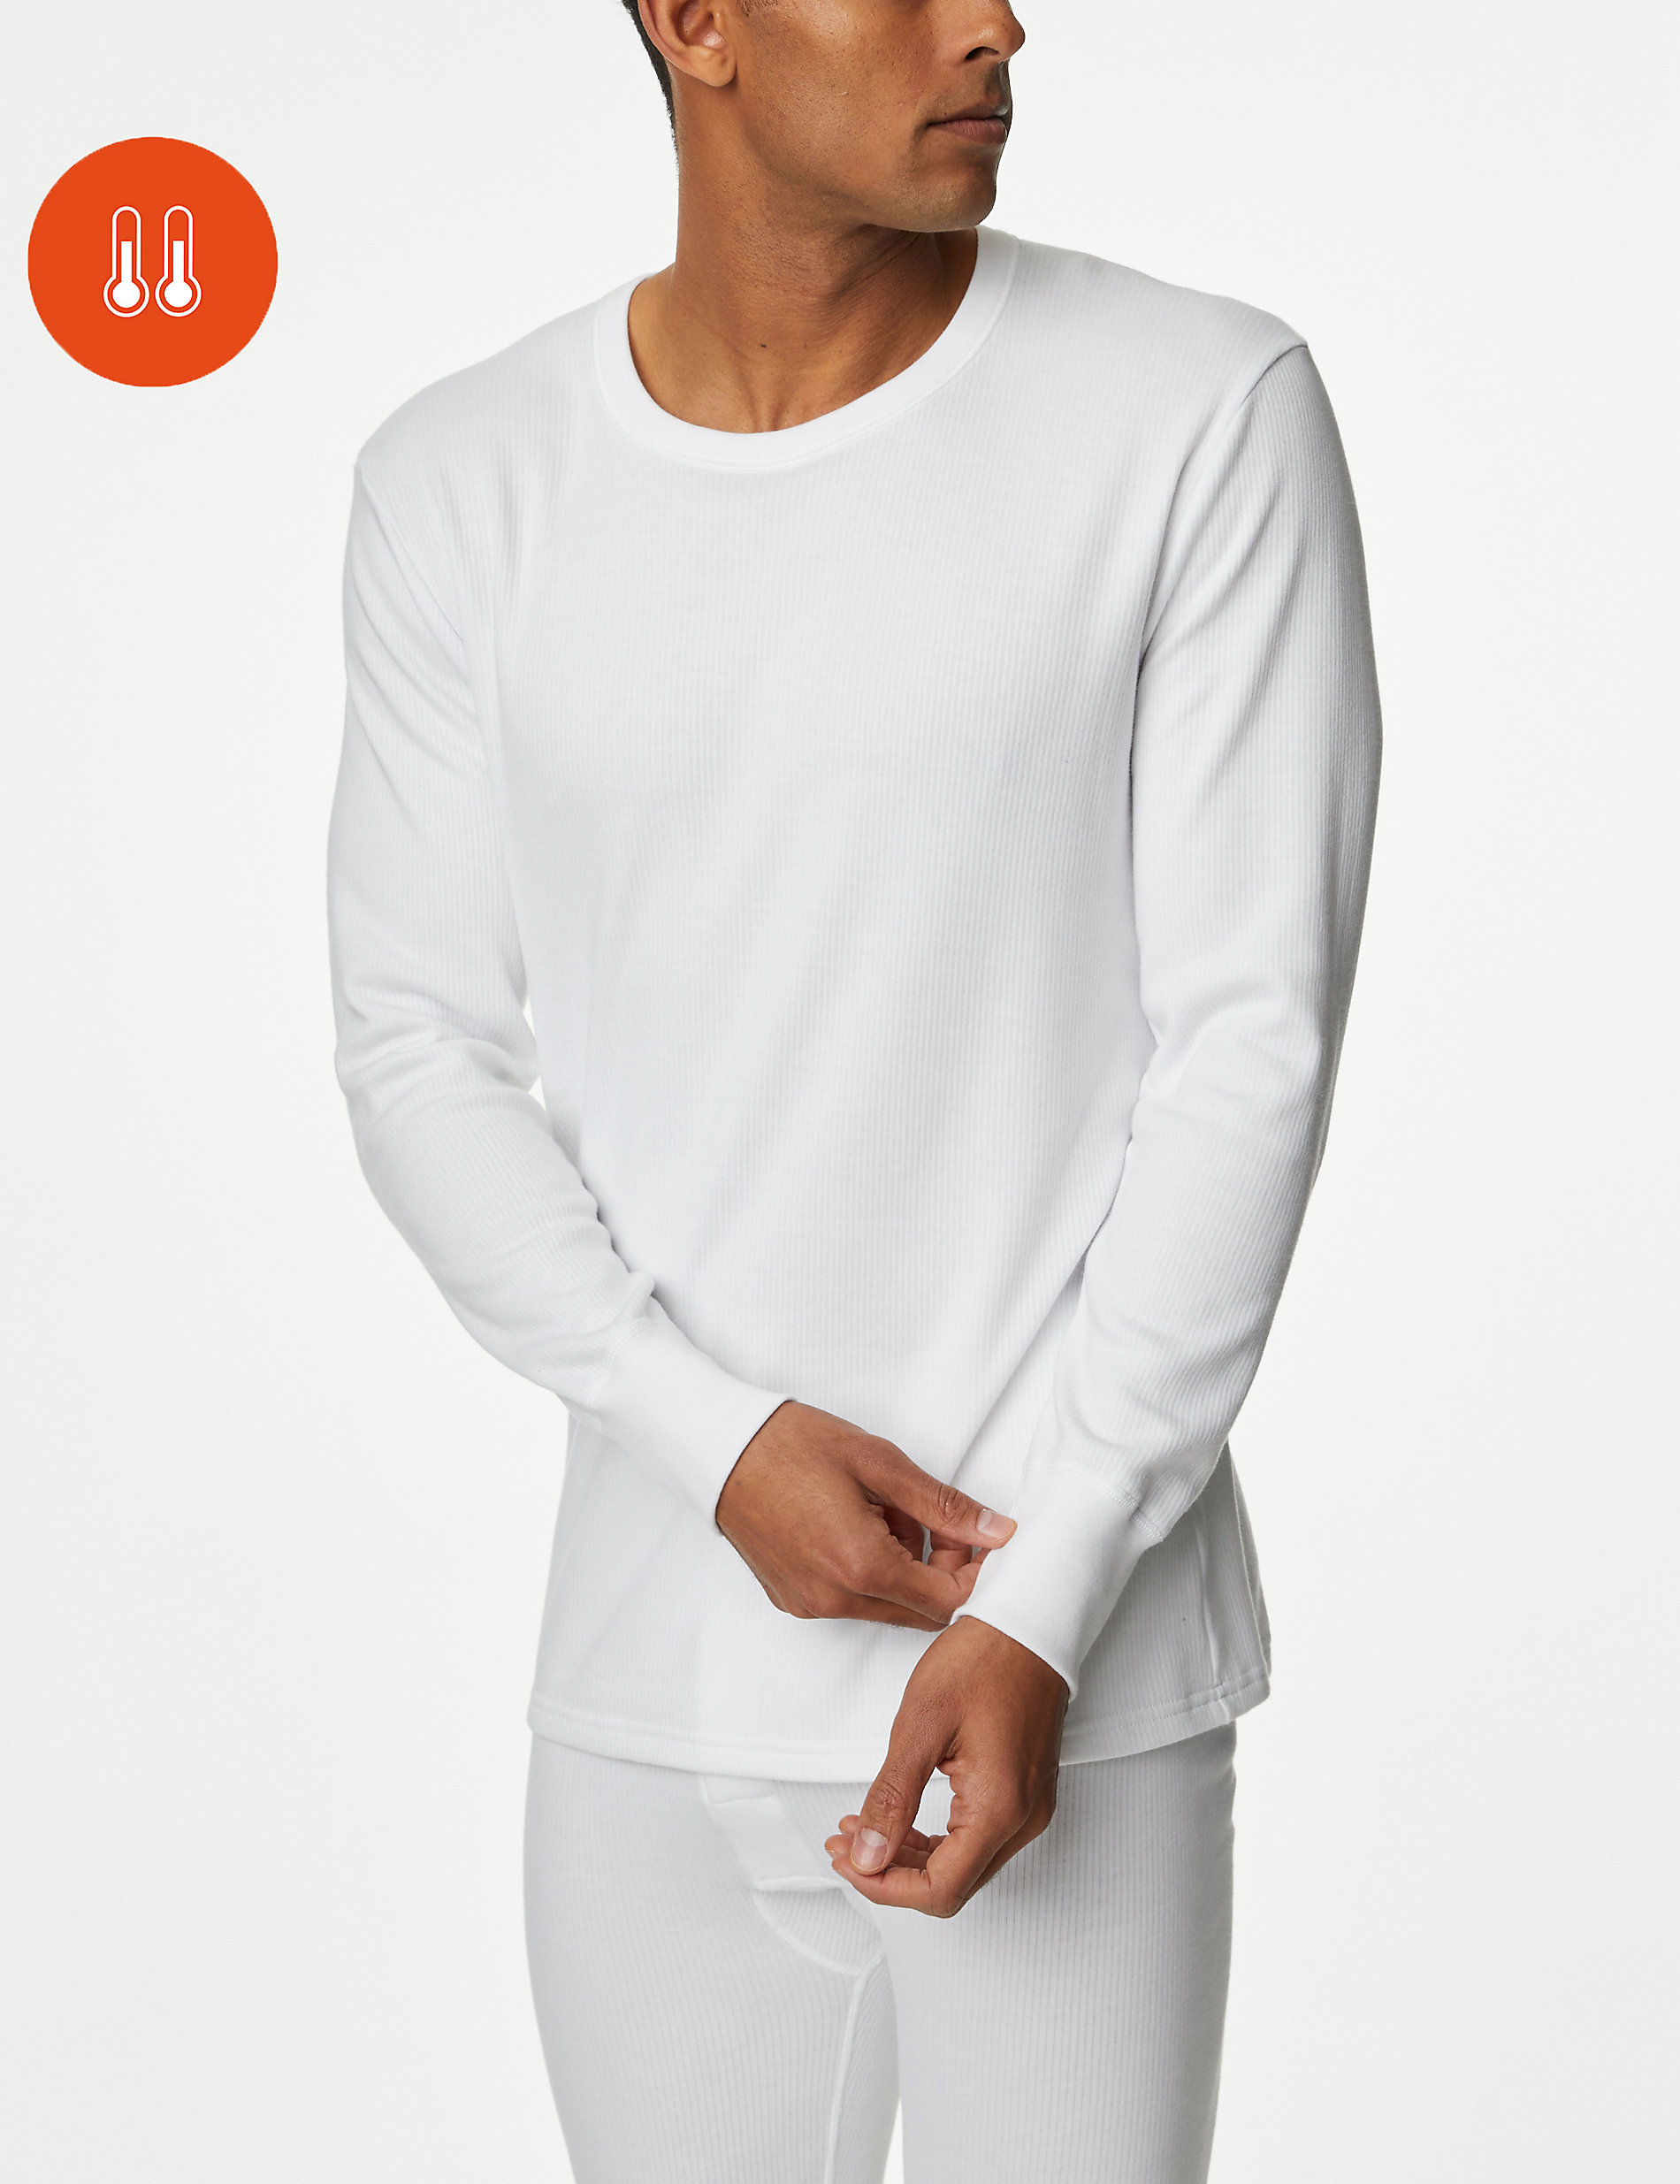 M & S Mens Thermal 2** Regular Warmth Long Sleeve Top T-Shirt Soft Warm Layering 